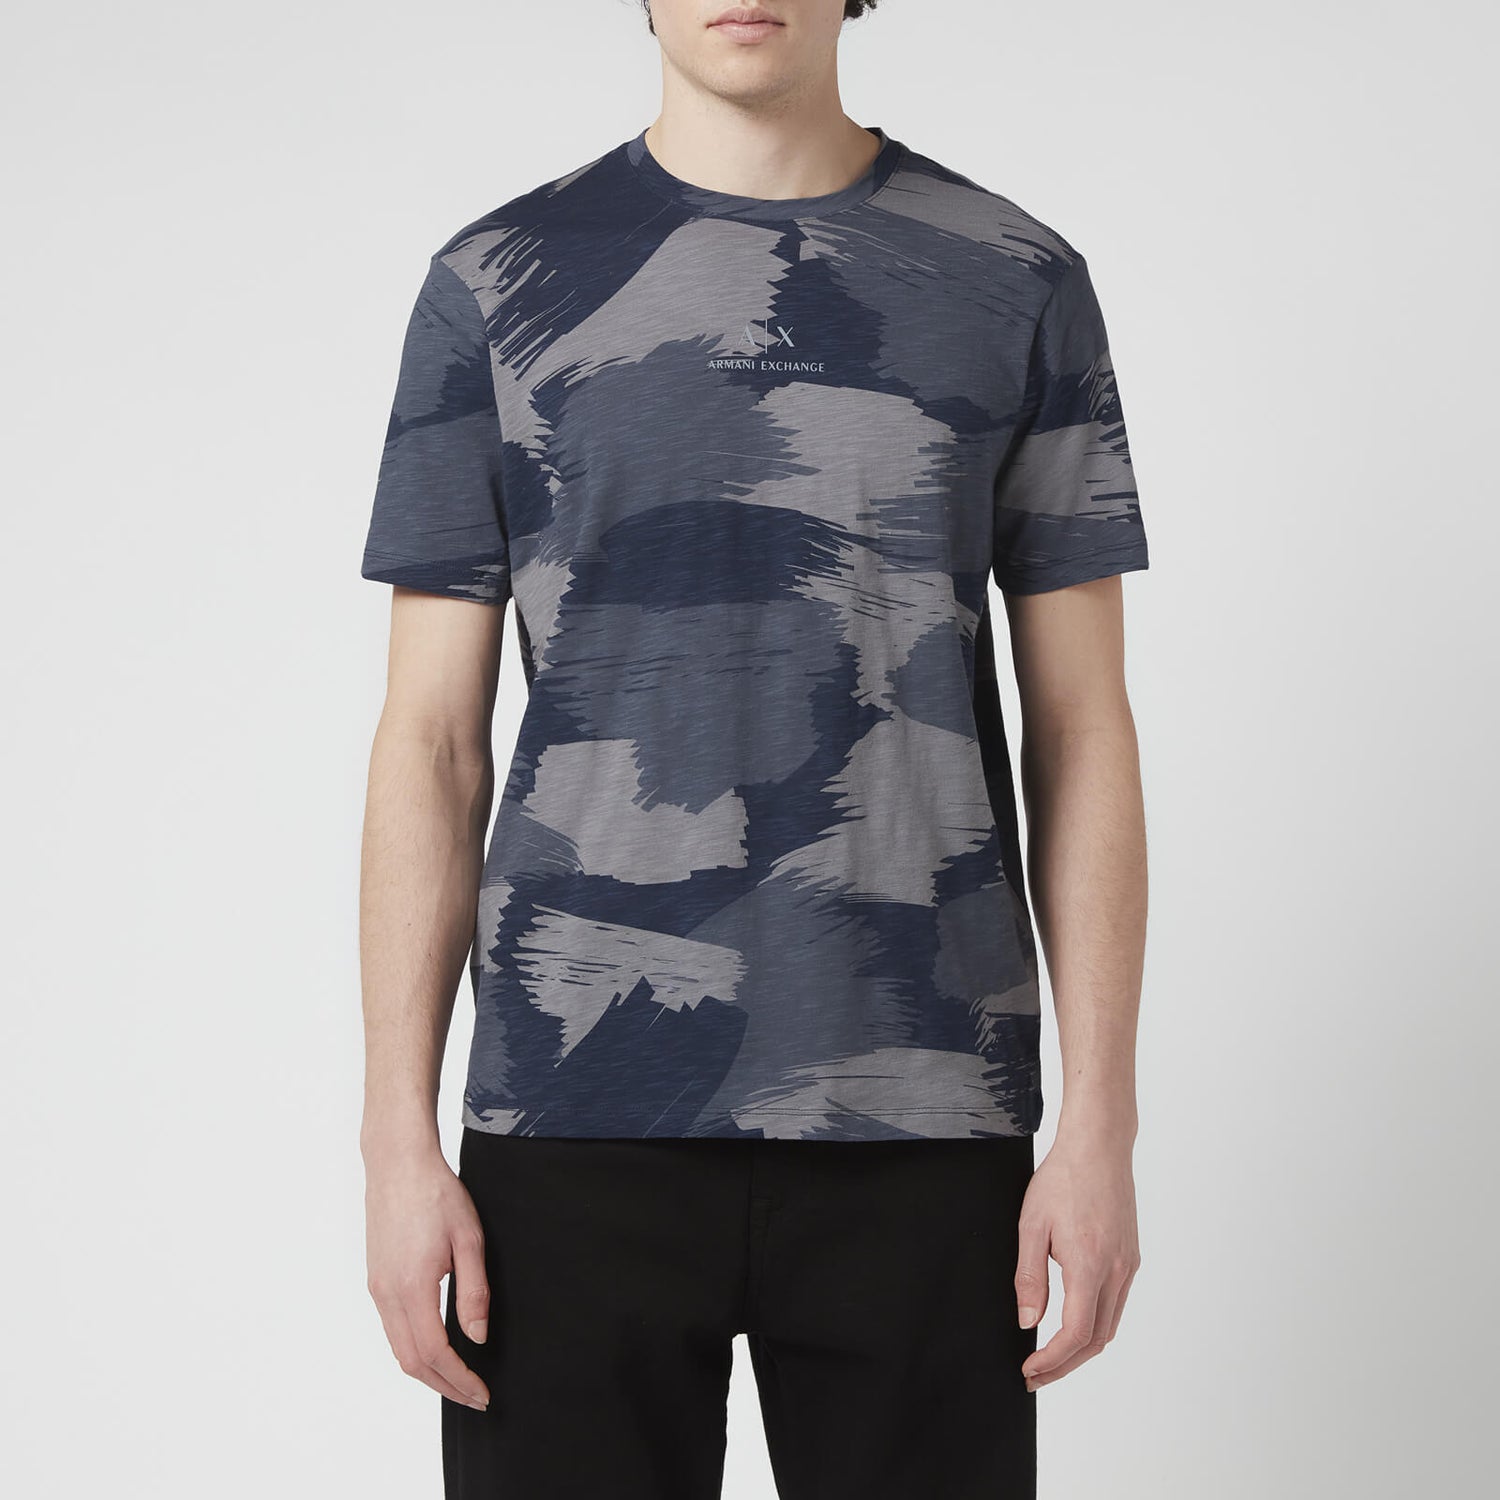 Armani Exchange Men's Paint Camo T-Shirt - Navy - M